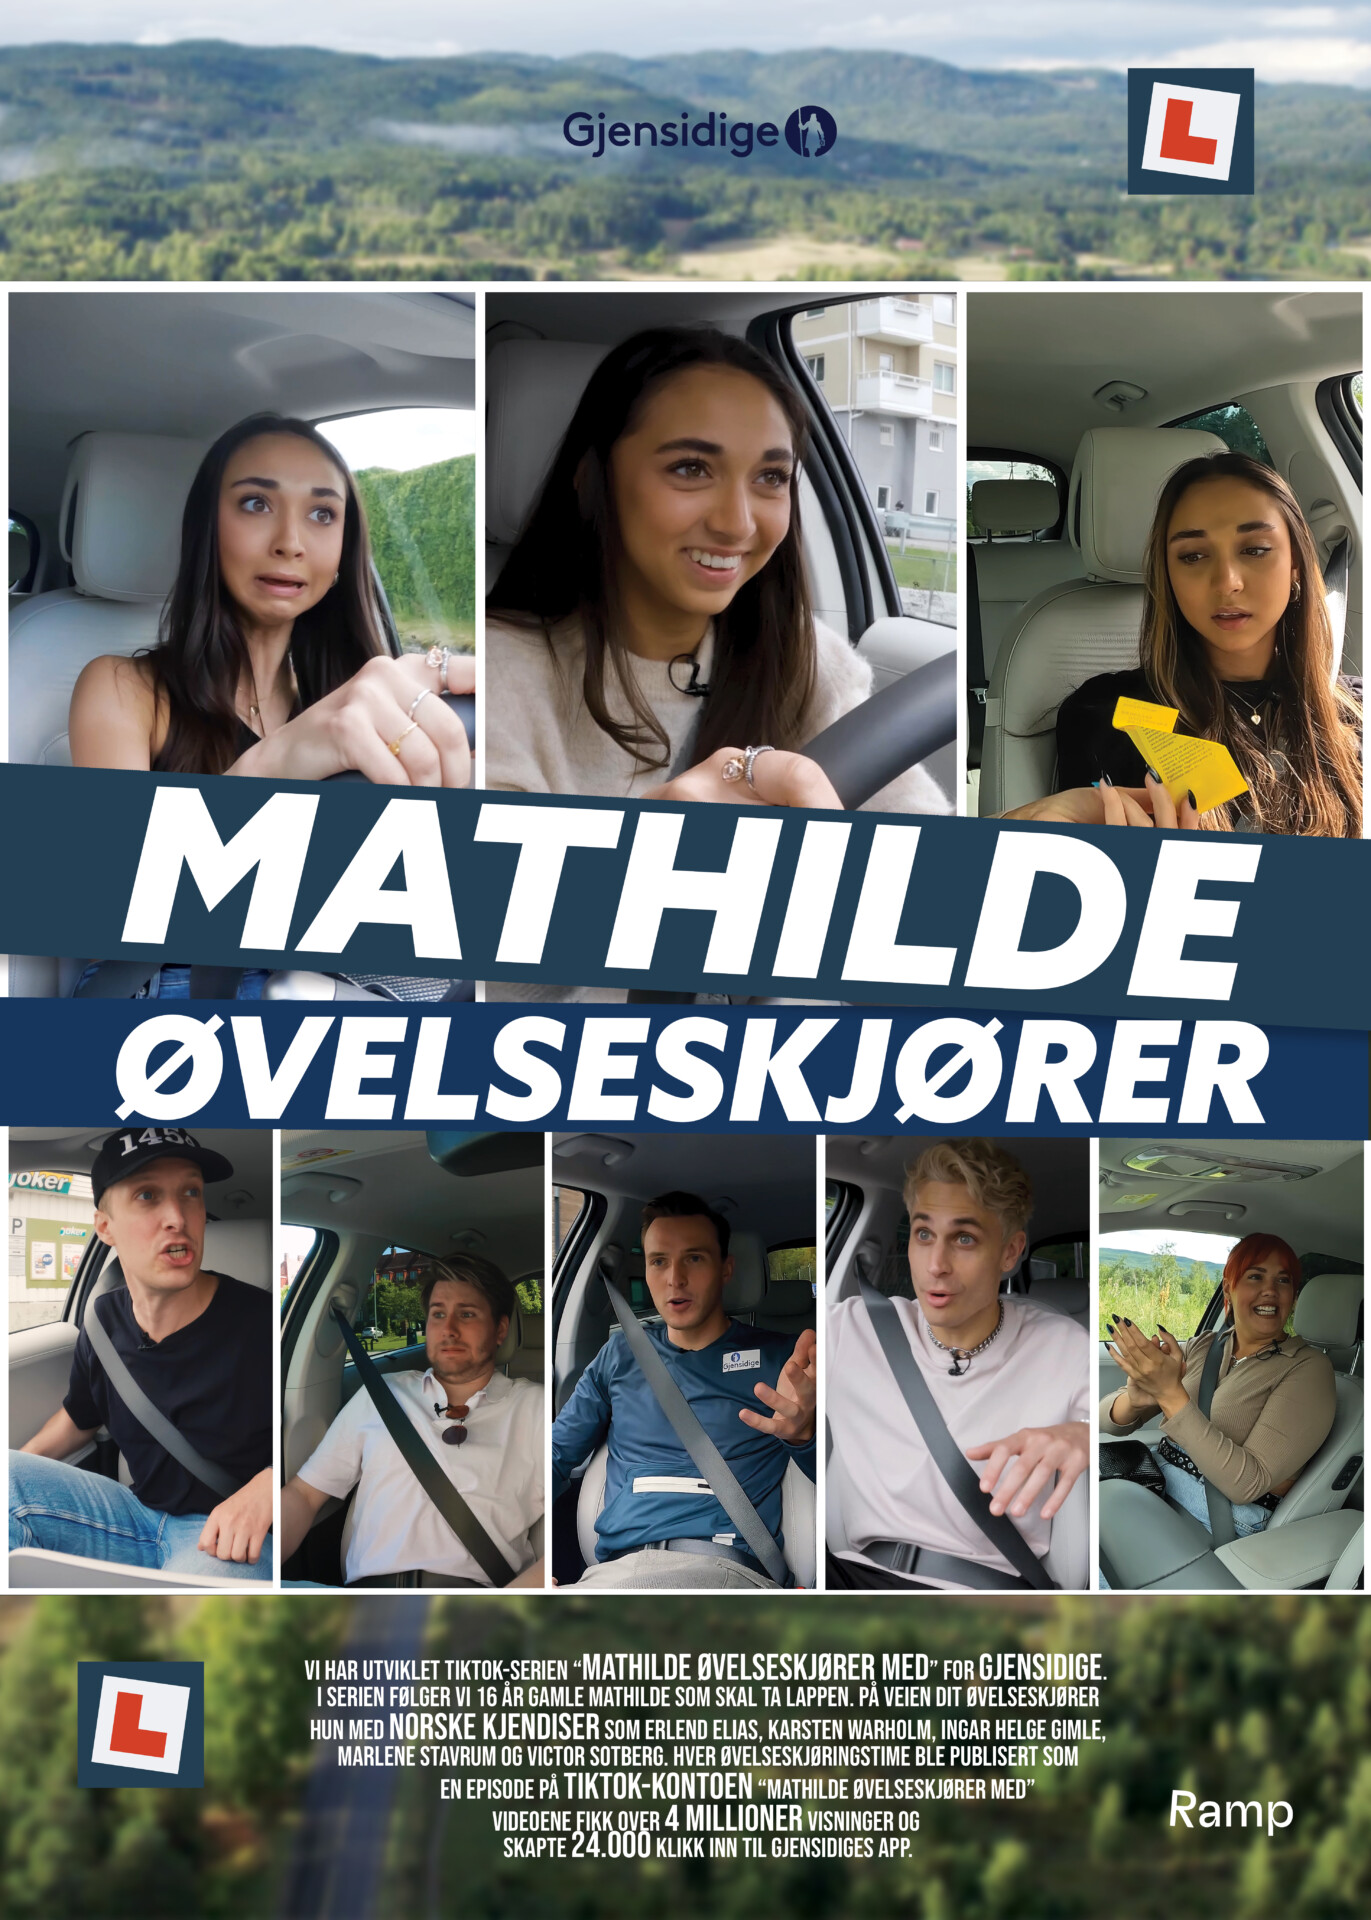 Mathilde Øvelseskjører Med Caseplakat